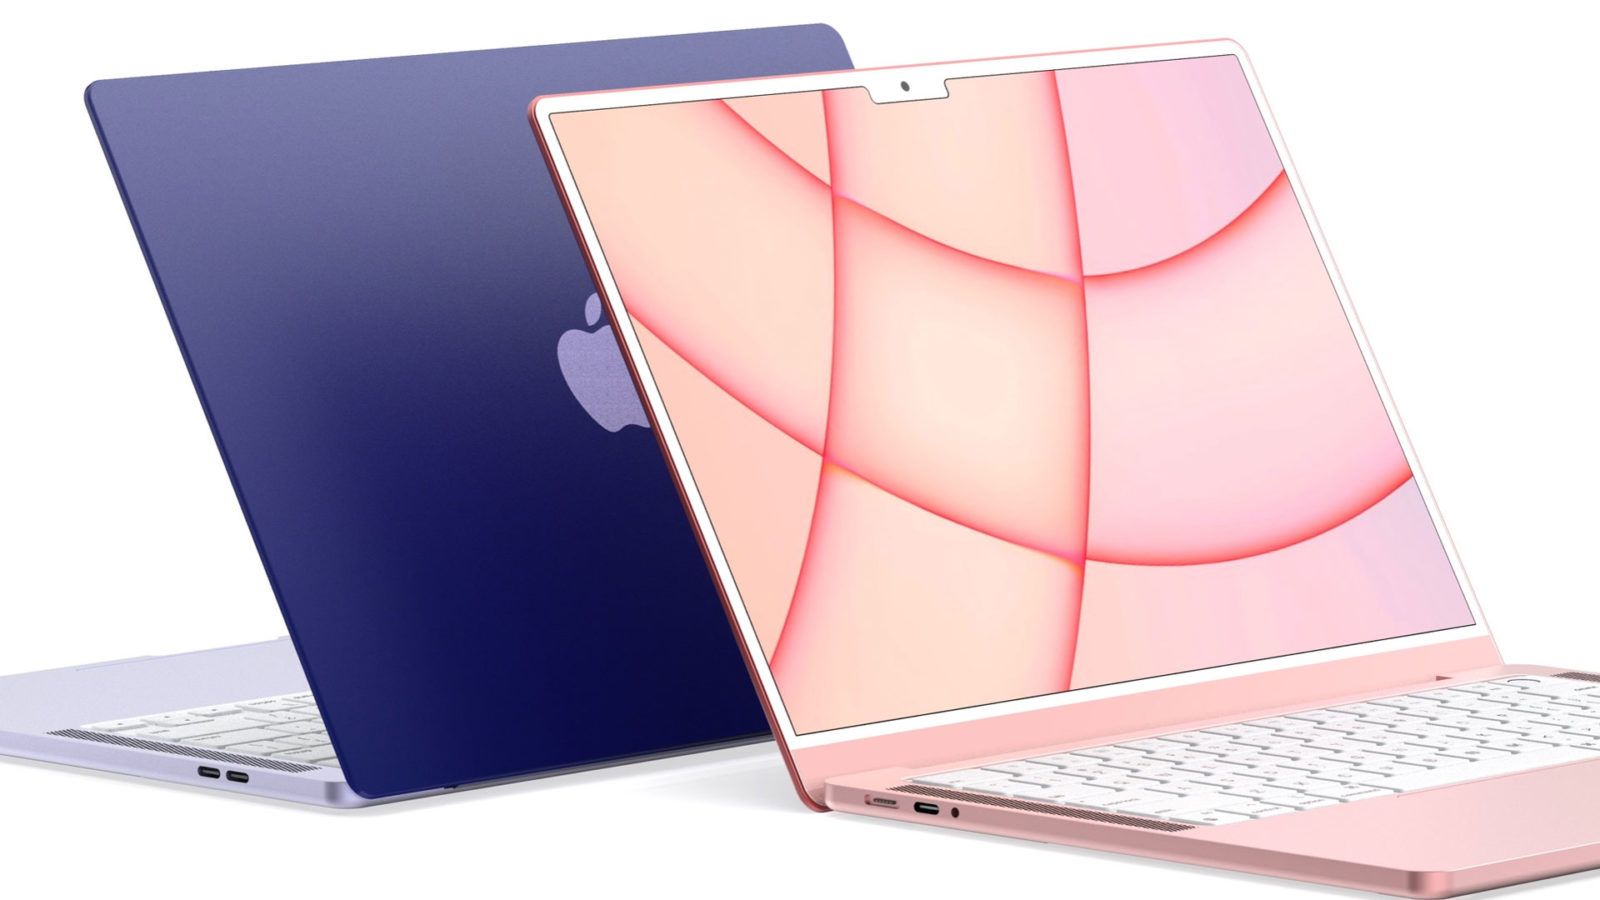 De MacBook Air krijgt een make over ziet de laptop er